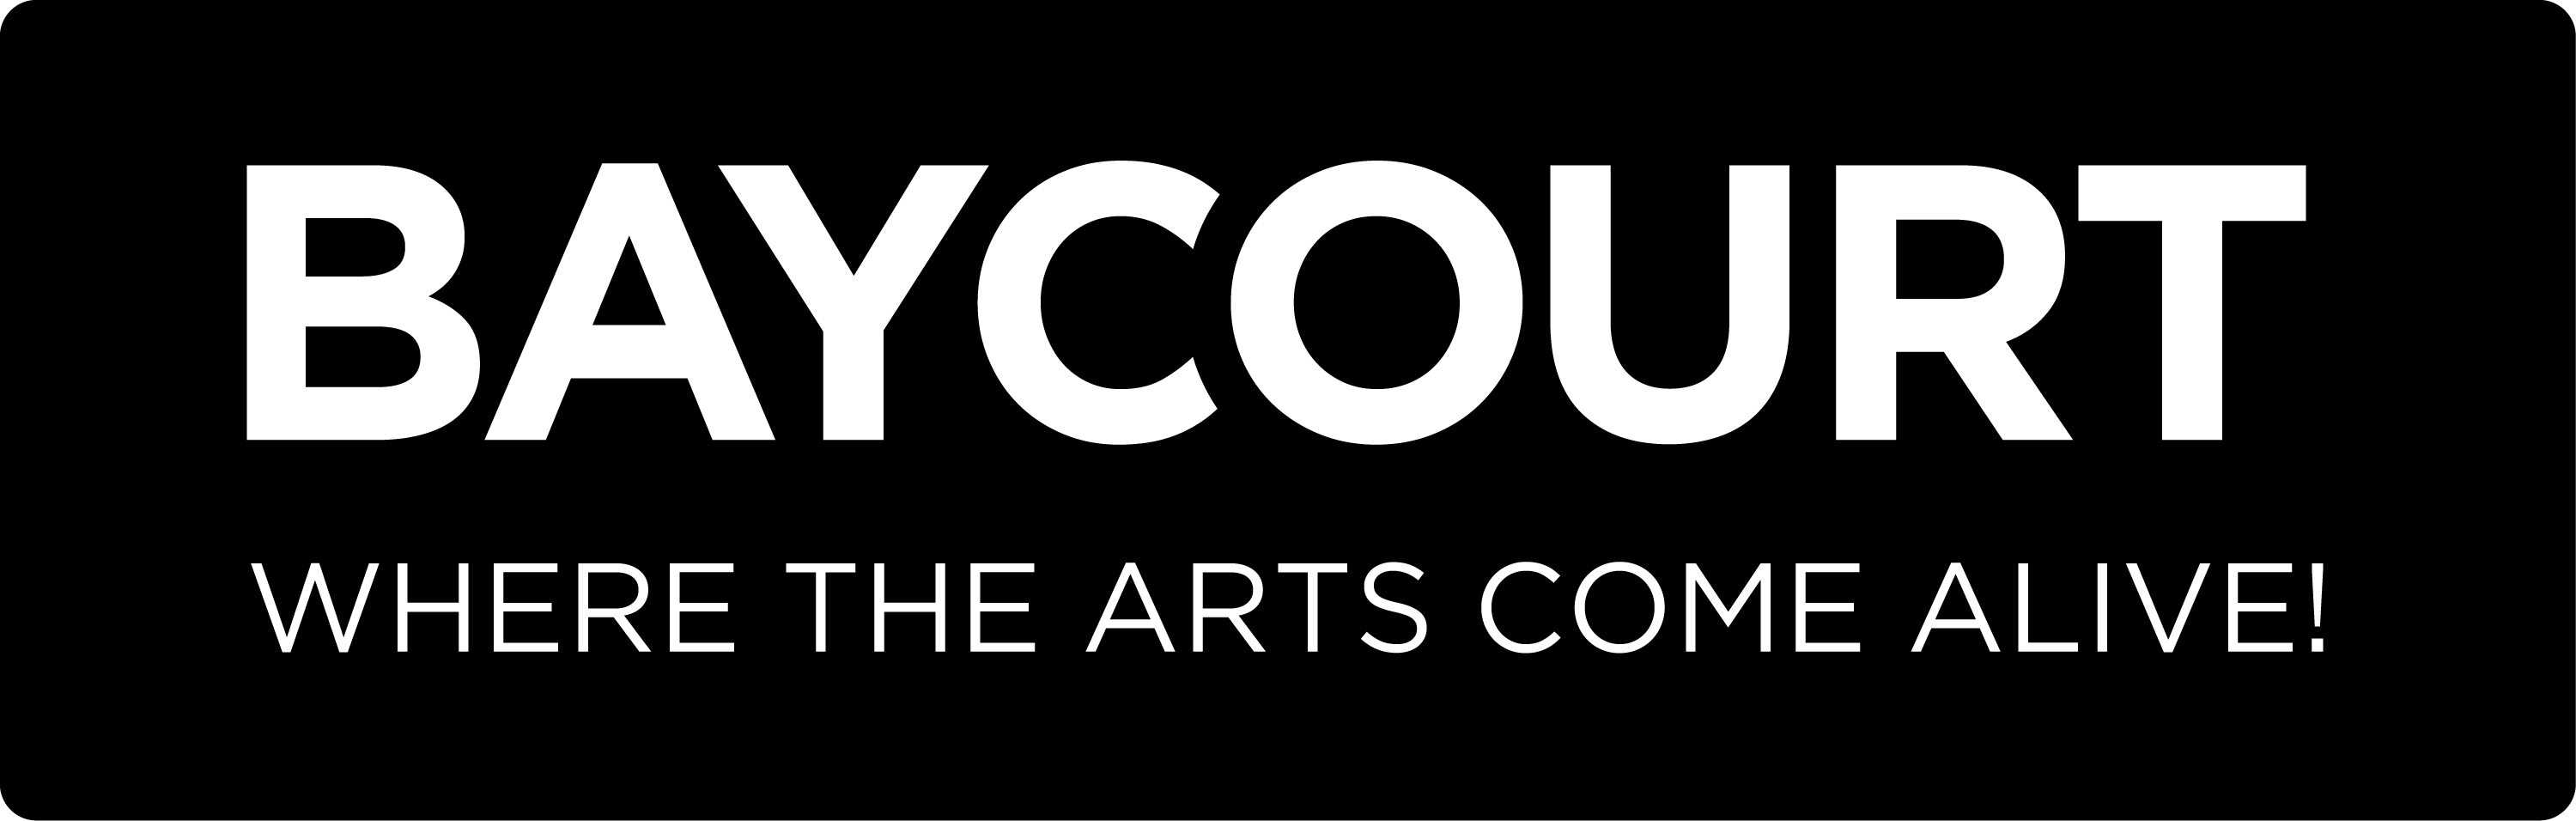 Baycourt Logo black boxed